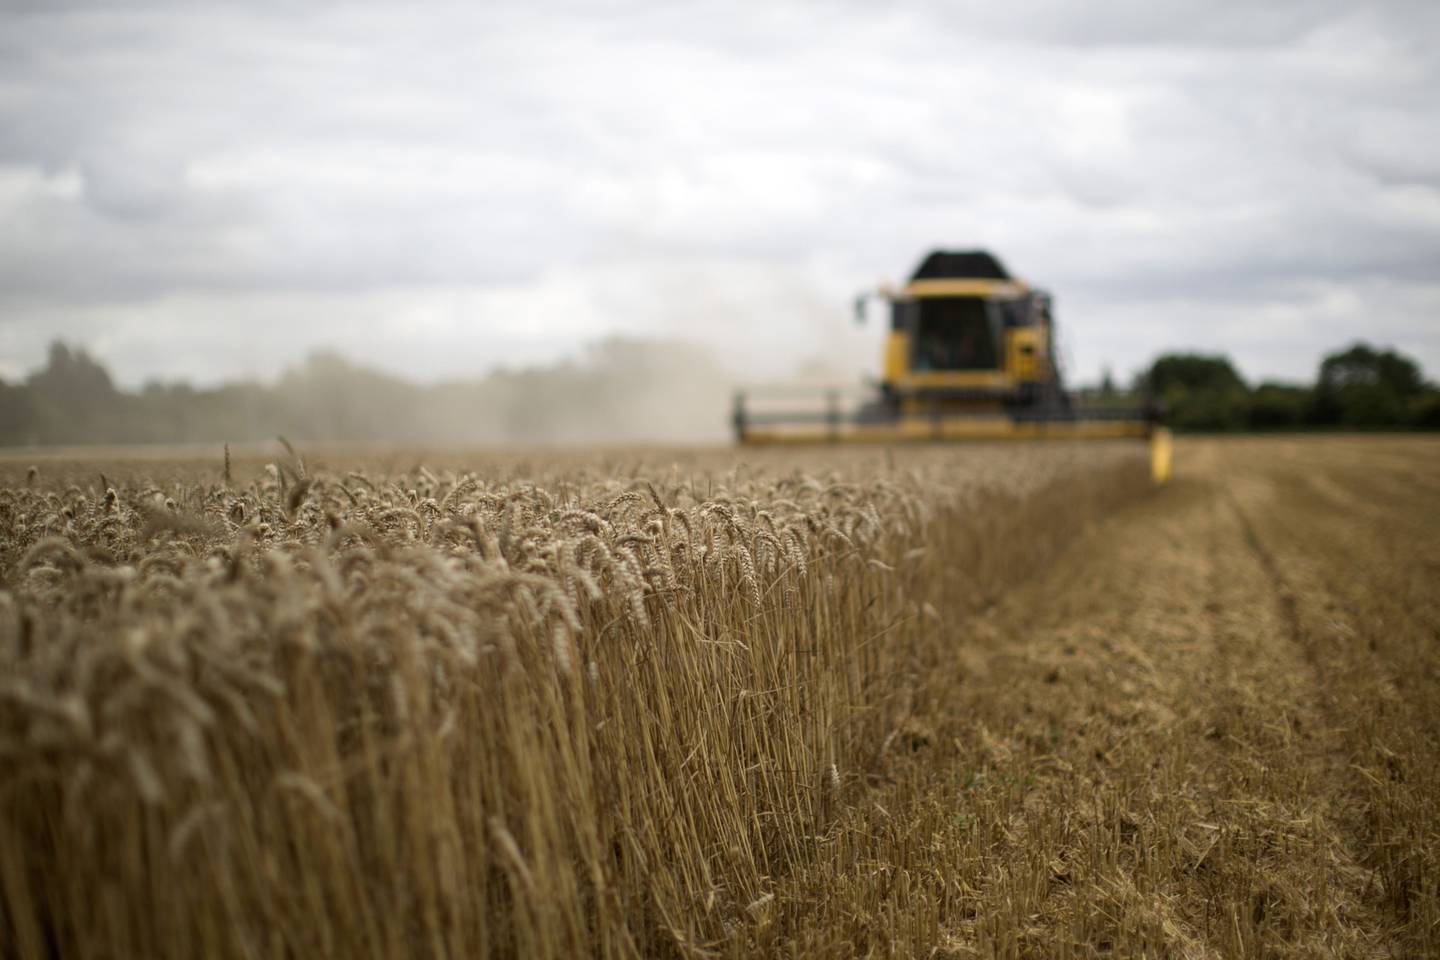 Una cosechadora New Holland Agriculture opera en un campo de trigo de invierno, cerca del pueblo de Fulbourn, Reino Unido.dfd